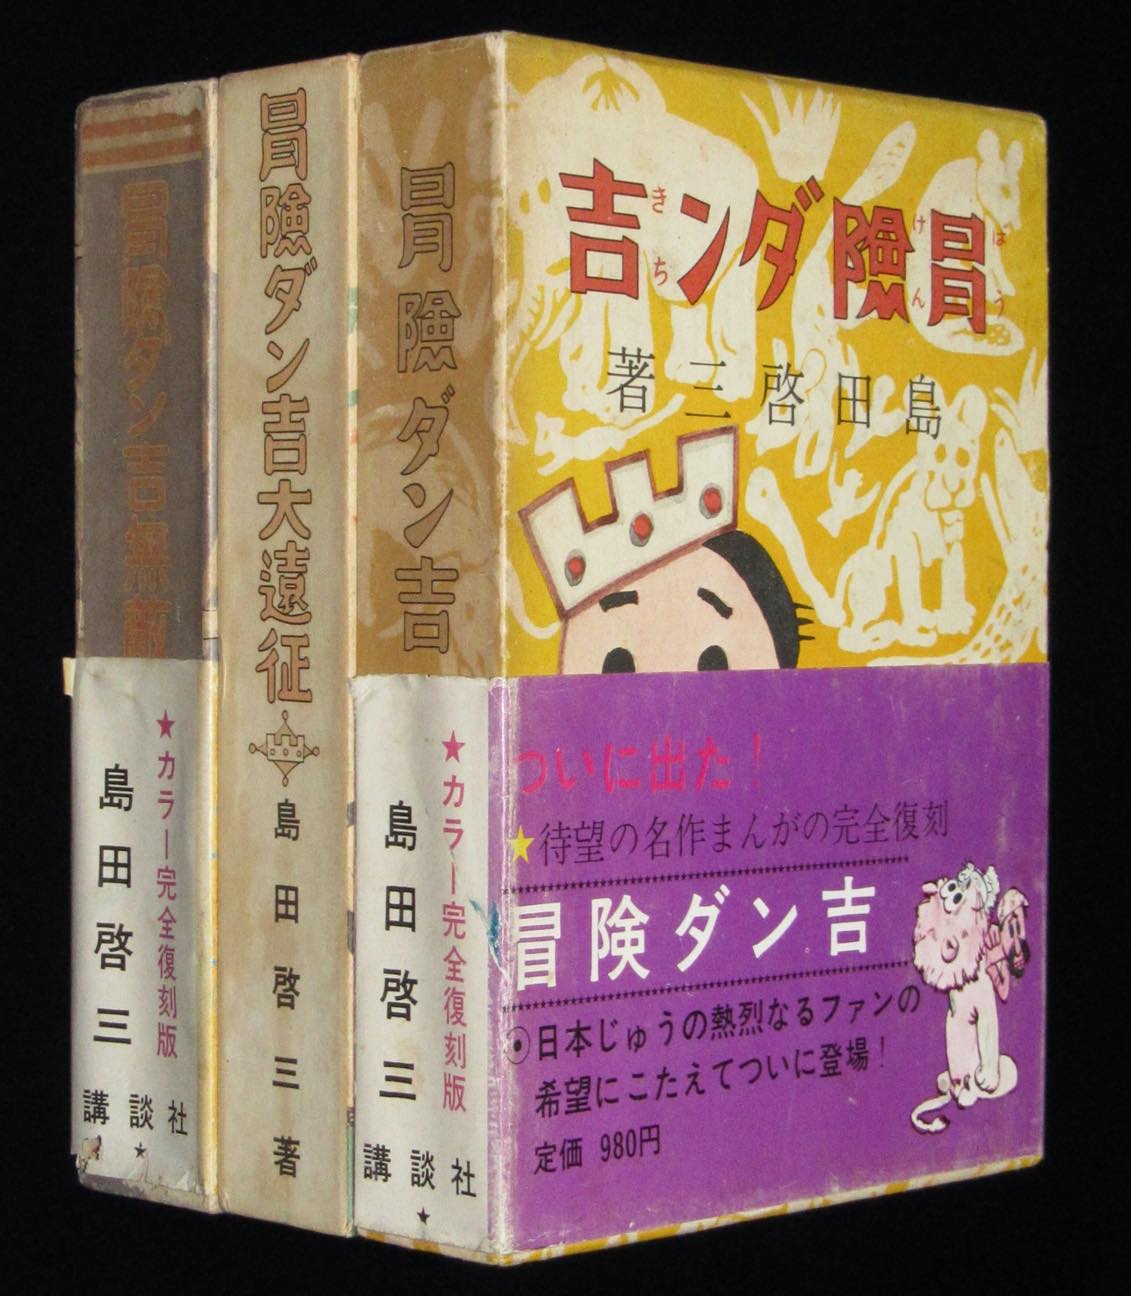 カラー完全復刻版 島田啓三 冒険ダン吉 全3巻セット 絶版漫画専門 じゃんくまうす